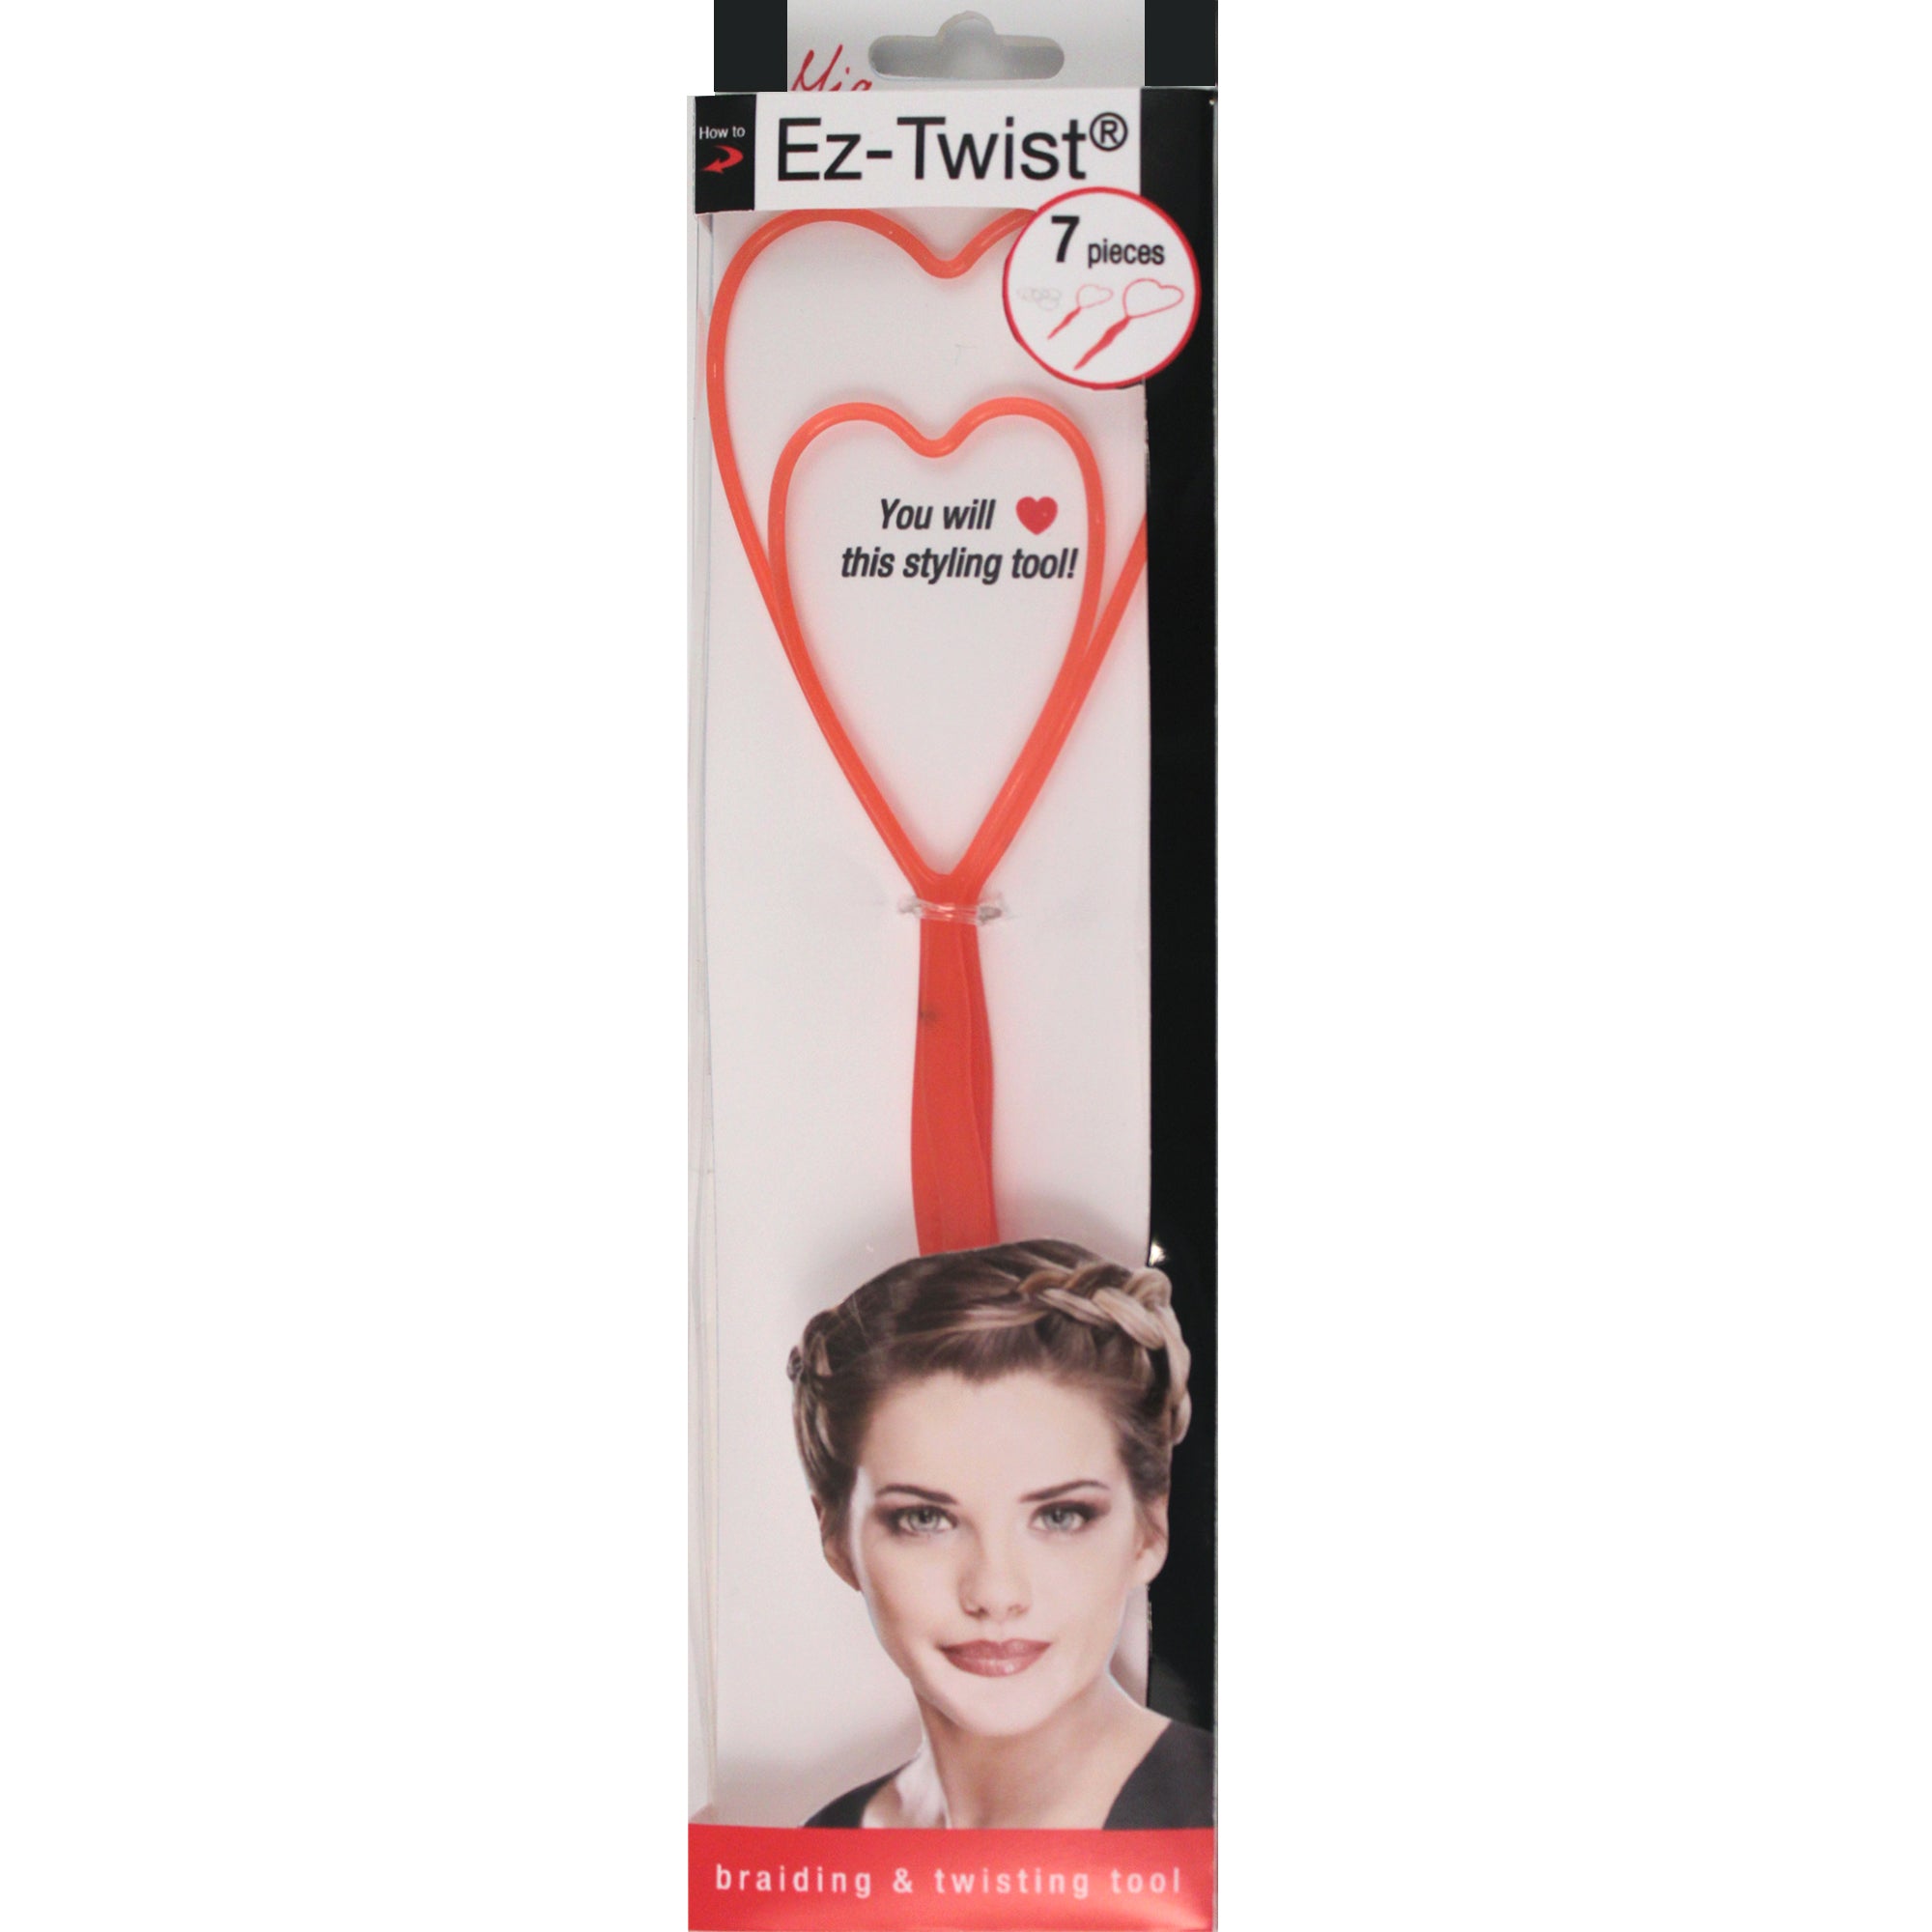 Mia®Ez-Twist hair styling tool - shown in packaging - by #MiaKaminski of #MiaBeauty #beauty #hair